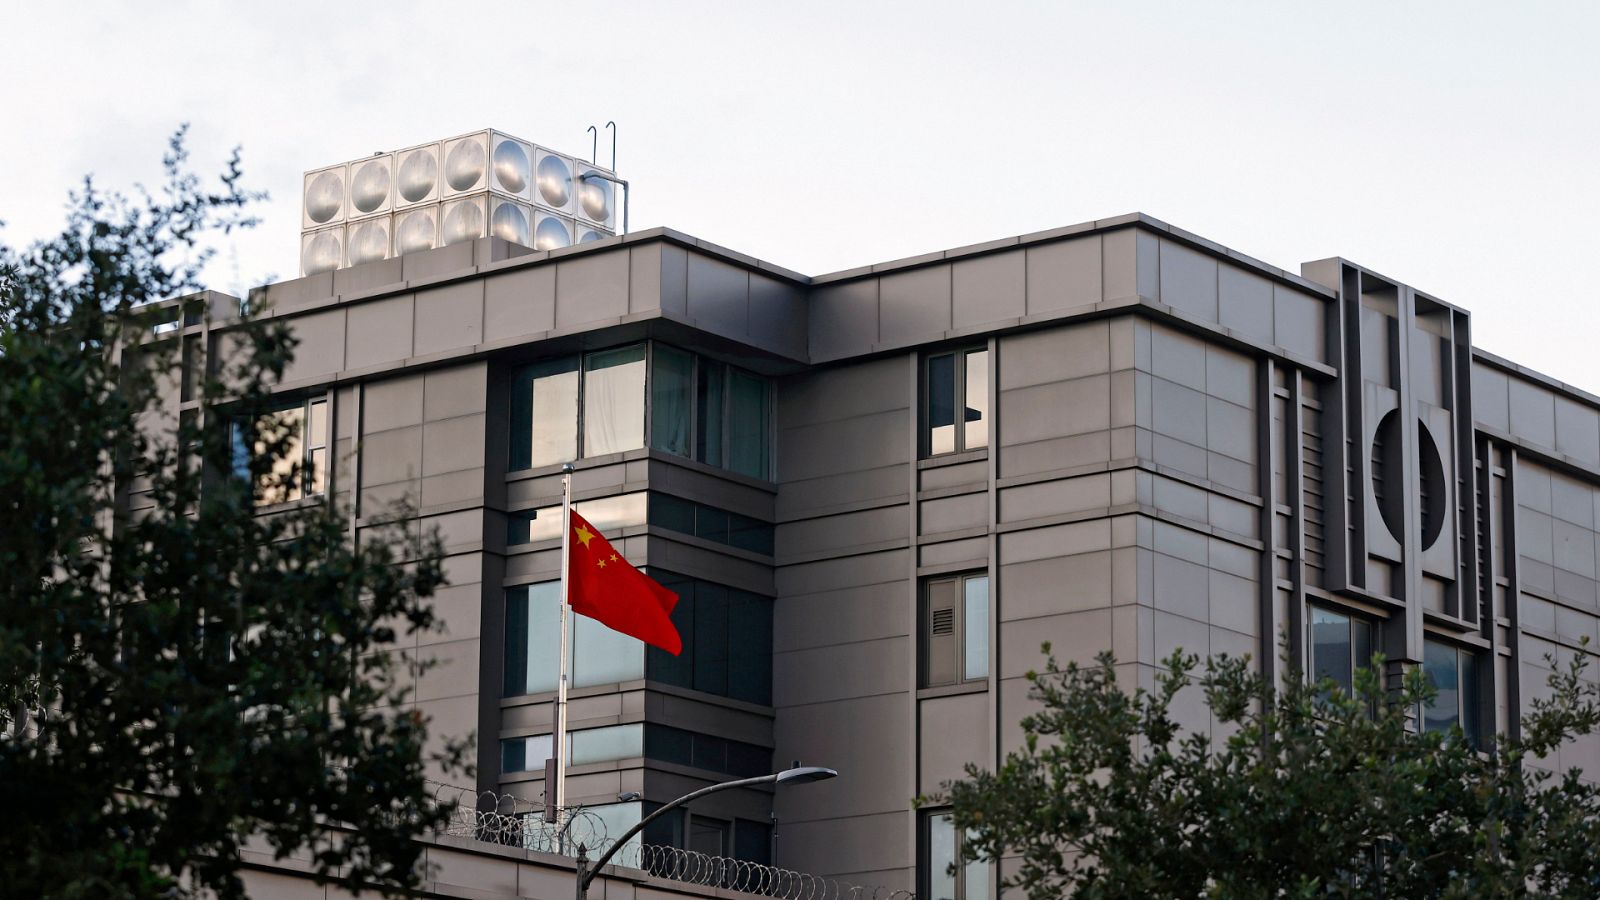  24 horas - Washington ordena el cierre del consulado chino en Houston en máximo 72 horas - Escuchar ahora 